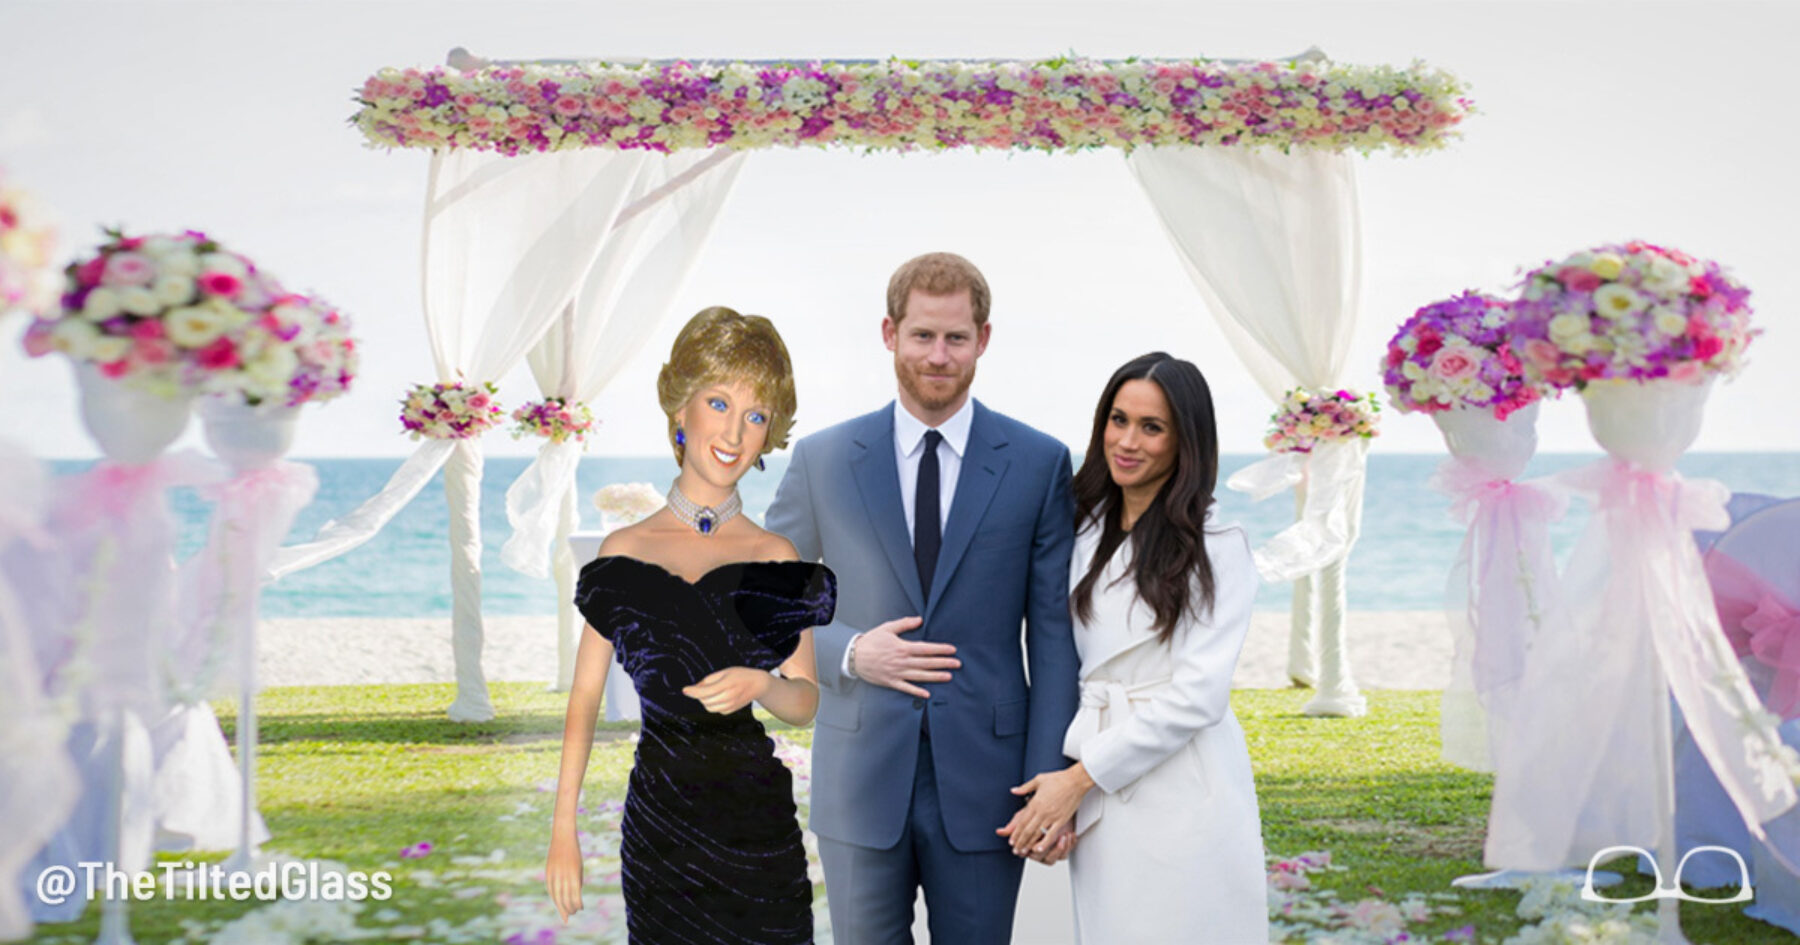 Hologram Princess Diana to Appear at Royal Wedding